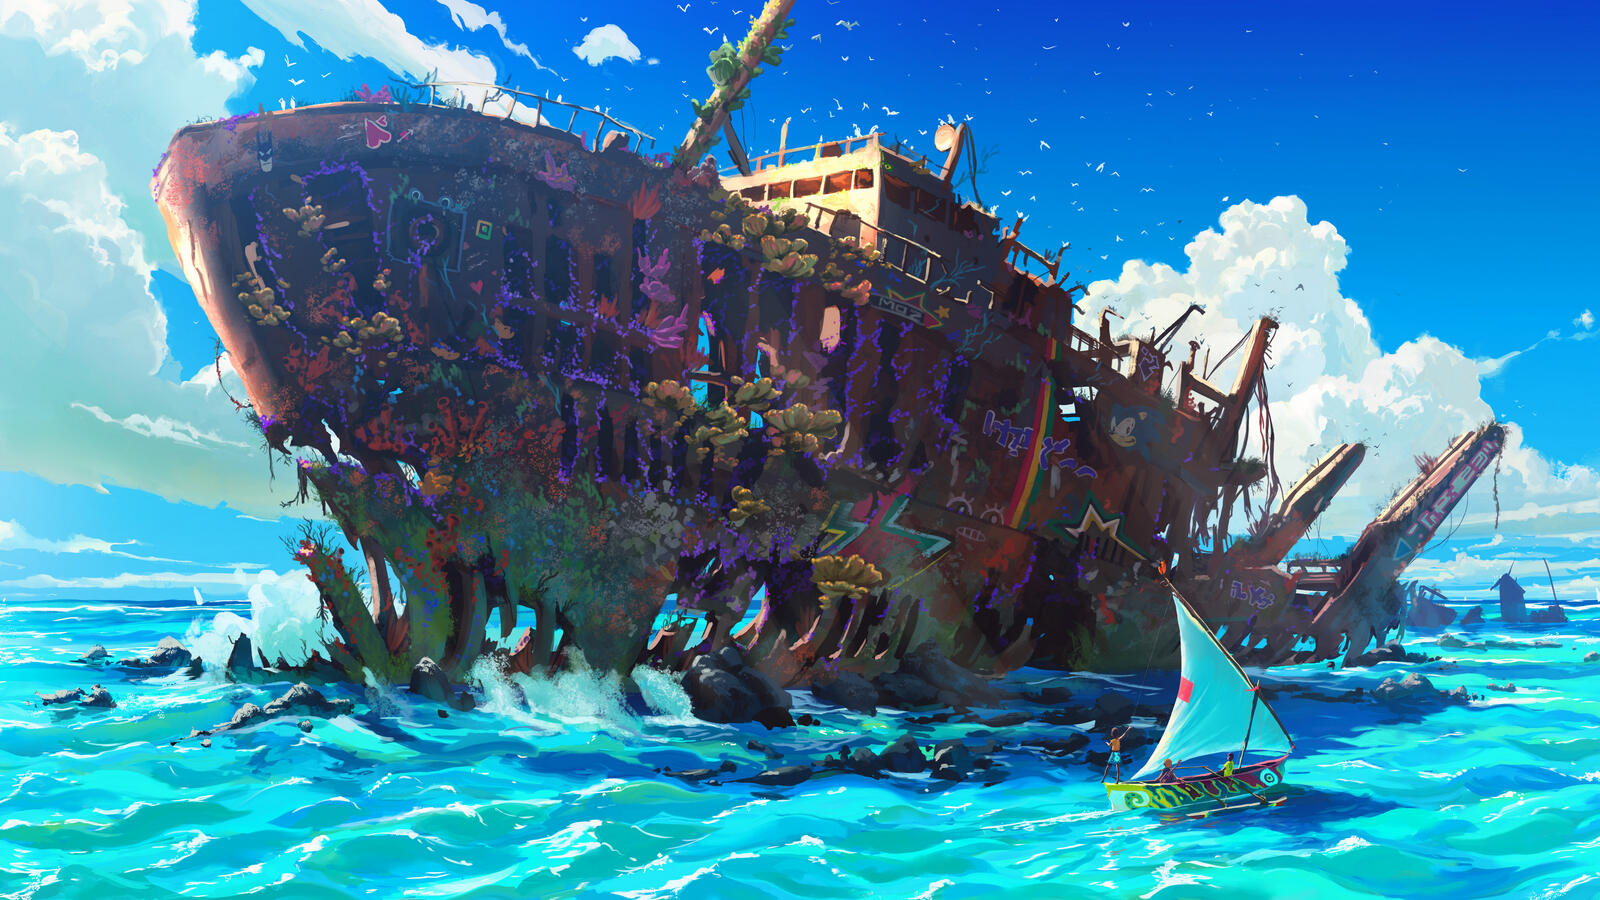 Бесплатное фото Рендеринг фантастической картинки с изображением заброшенного корабля и маленького парусника